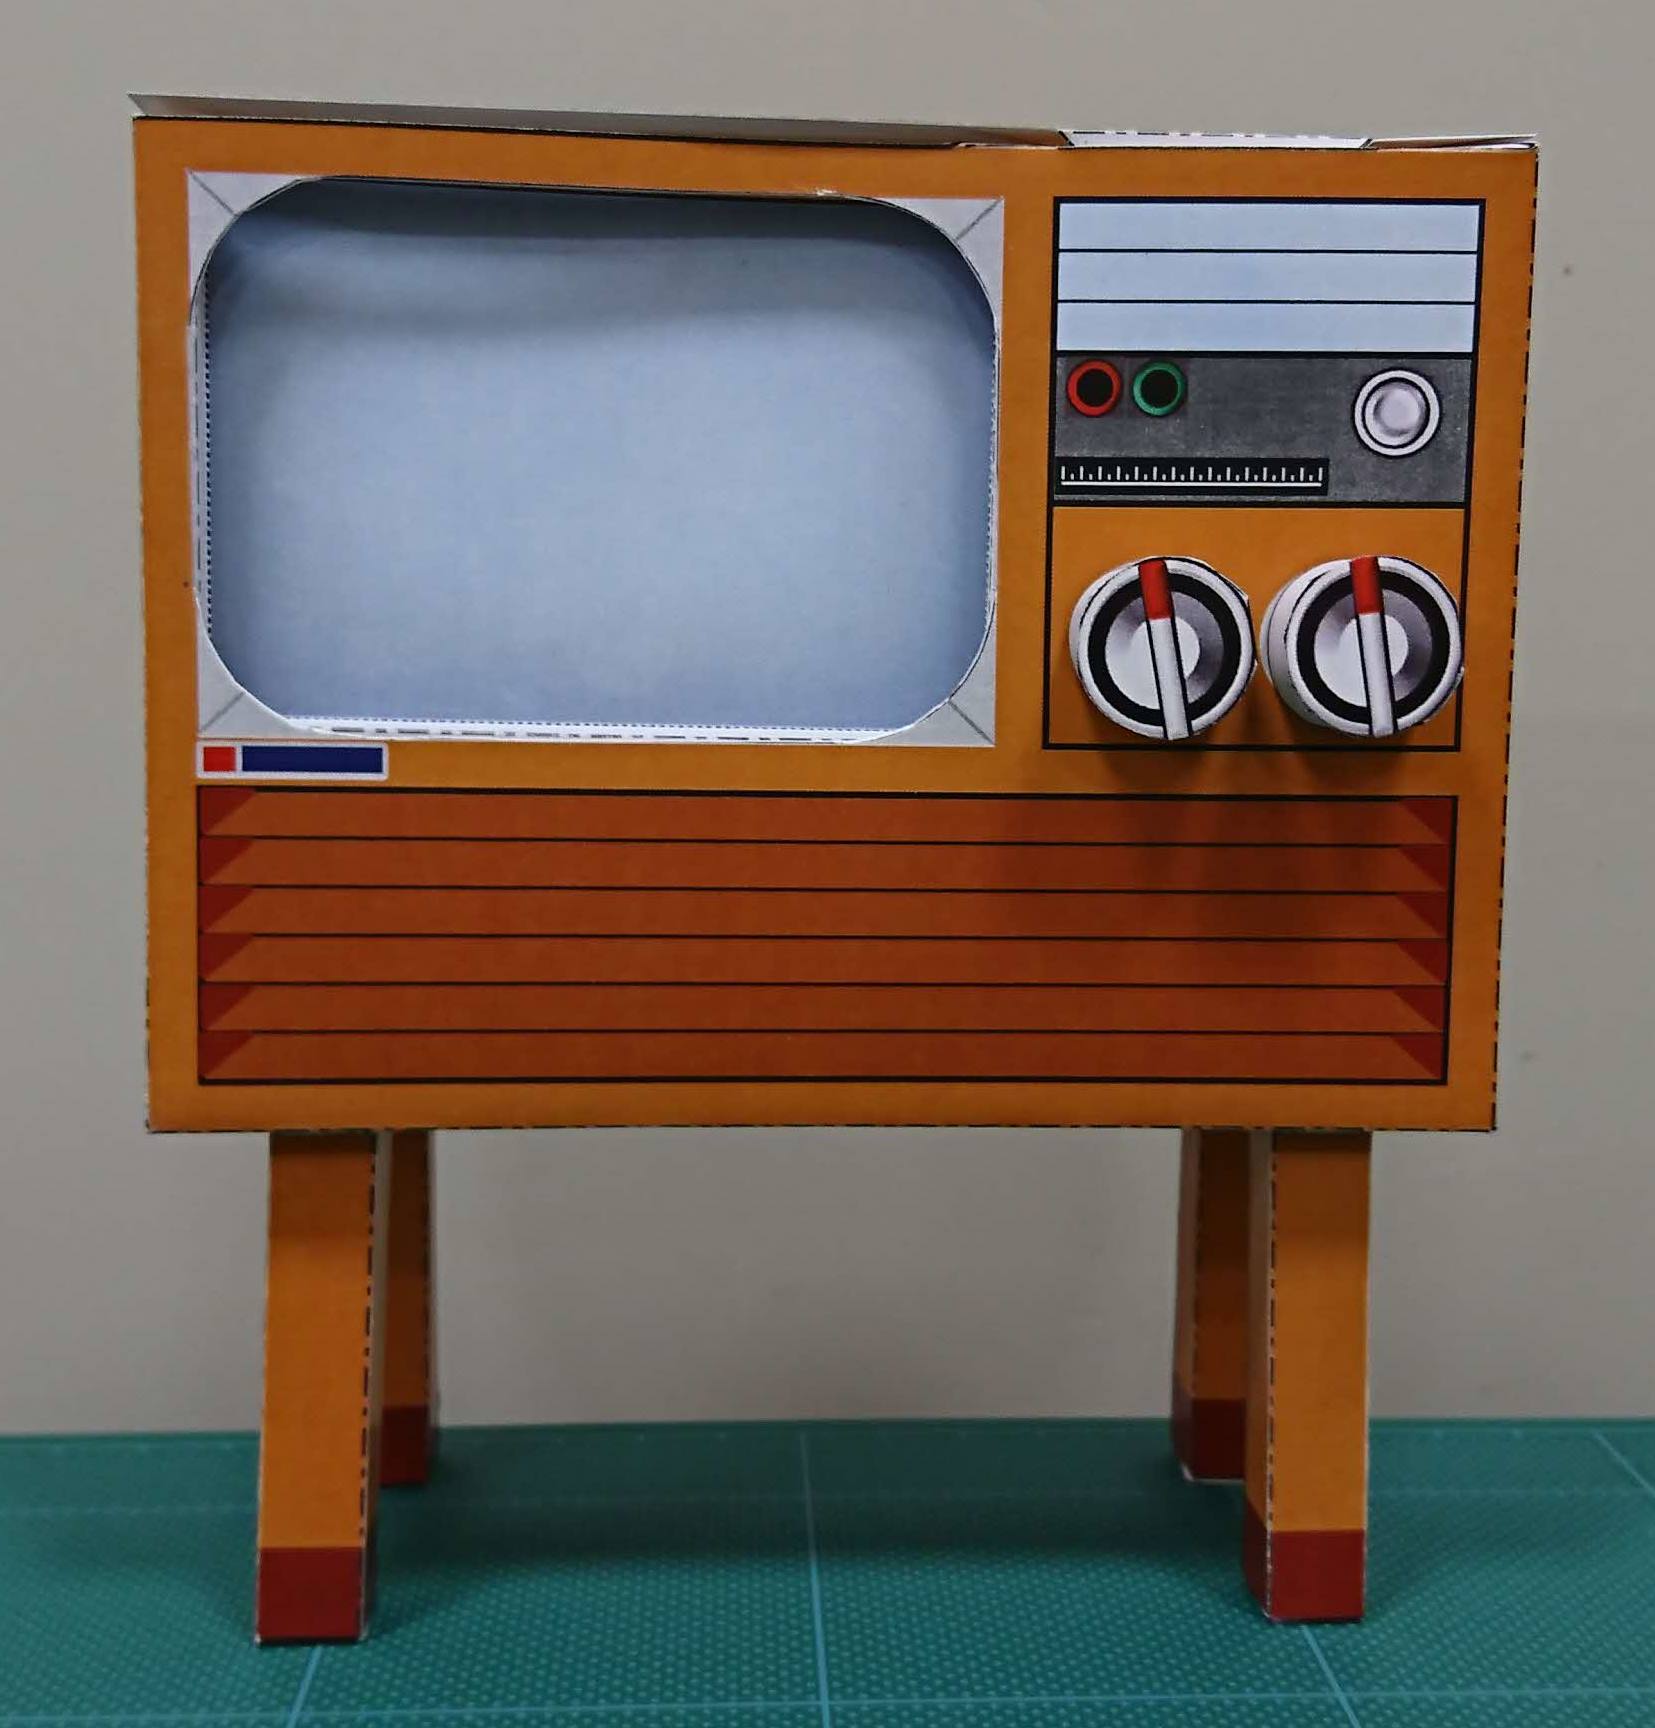 ちょっと昔の家電ペーパークラフト カラーテレビ 品川区立 品川歴史館